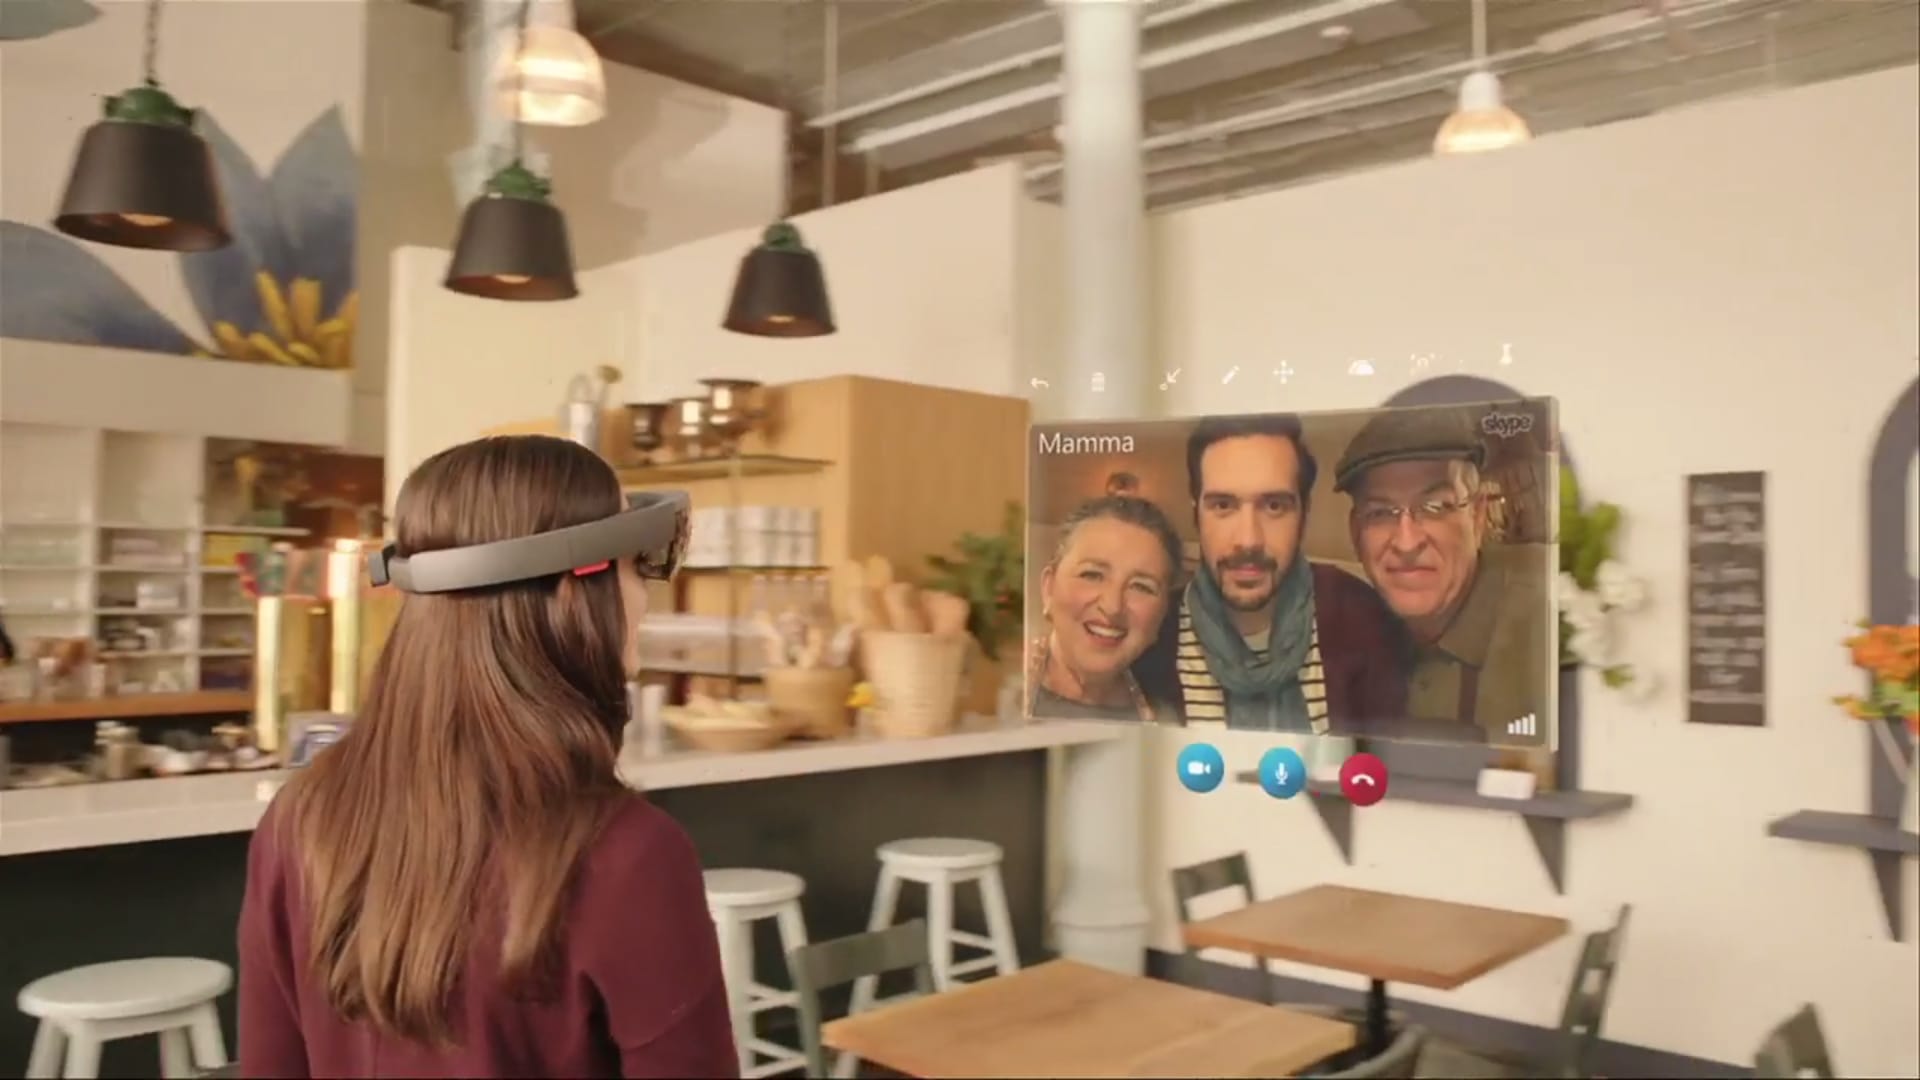 Microsoft bringt auch Skype auf die HoloLense-Brille, sodass damit auch kommuniziert werden kann.